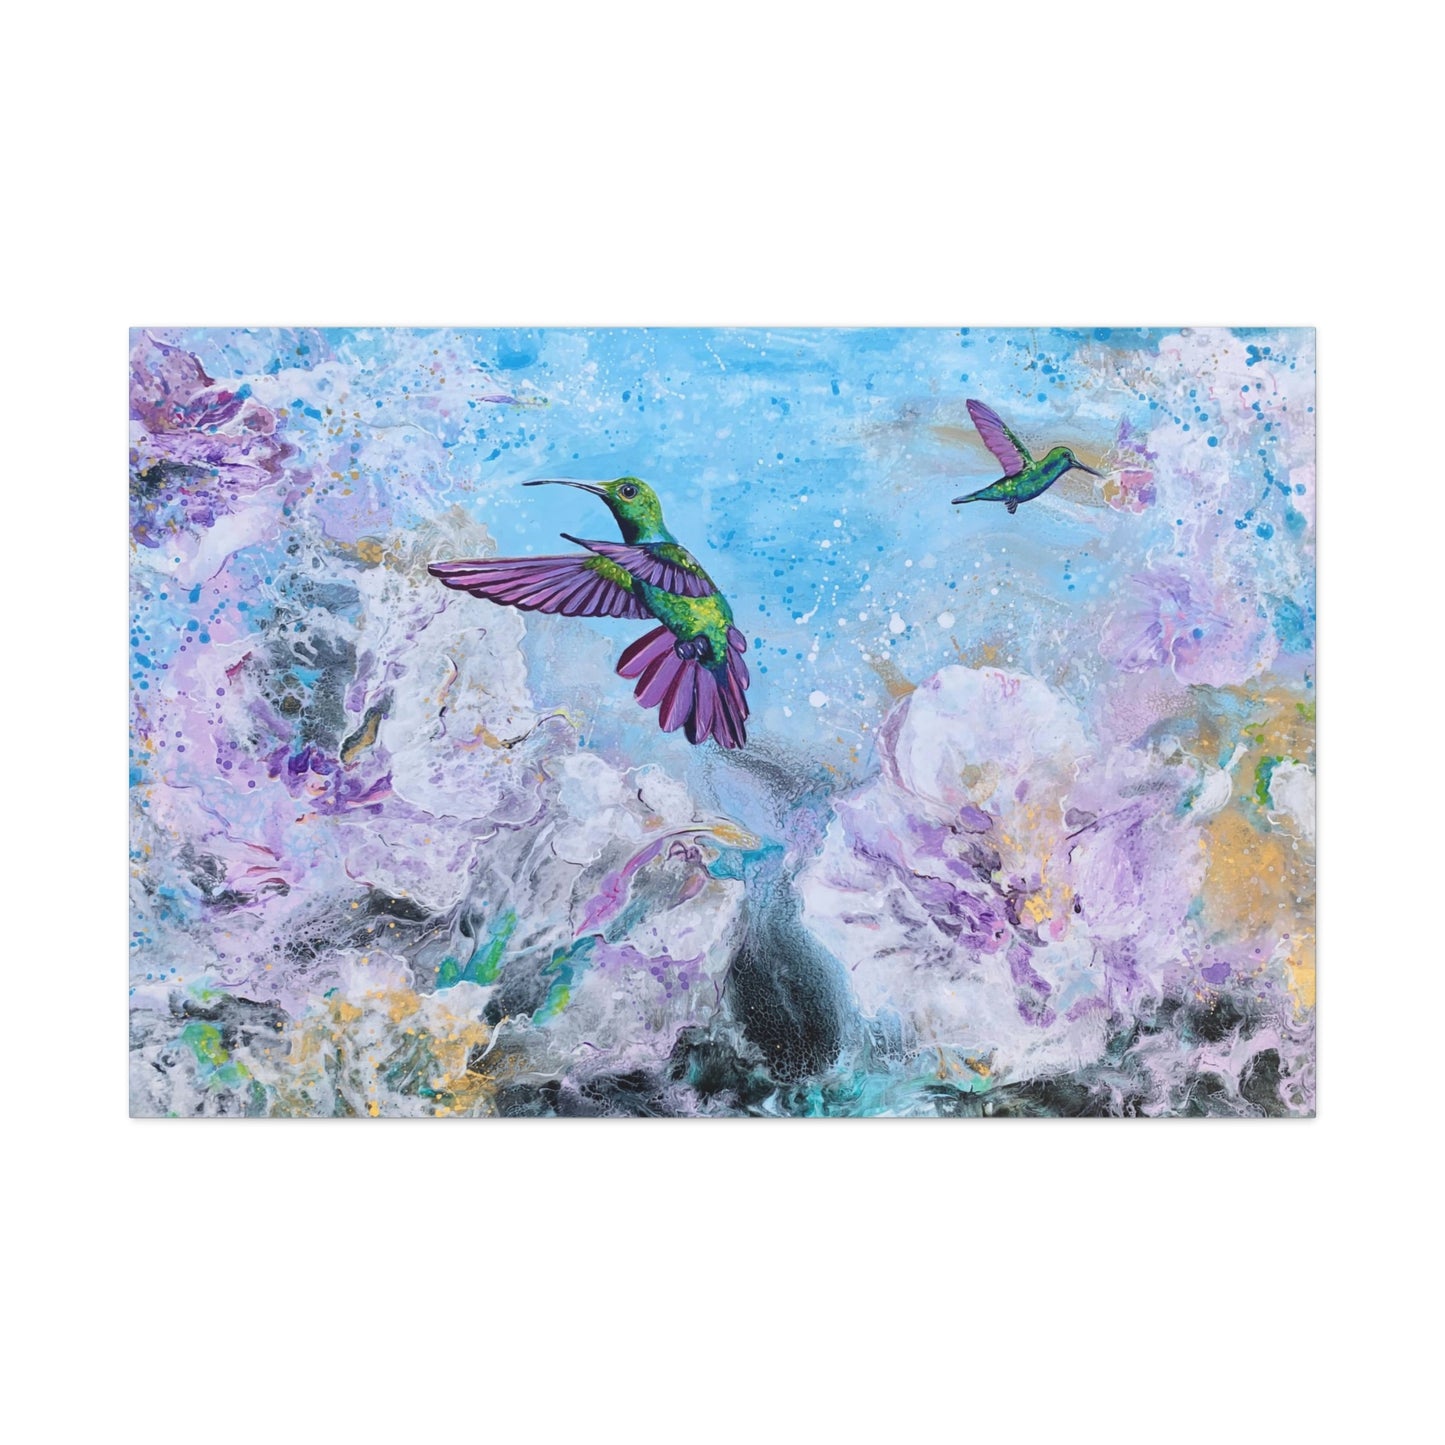 Hummingbird Visitors - Premium Gallery Wraps